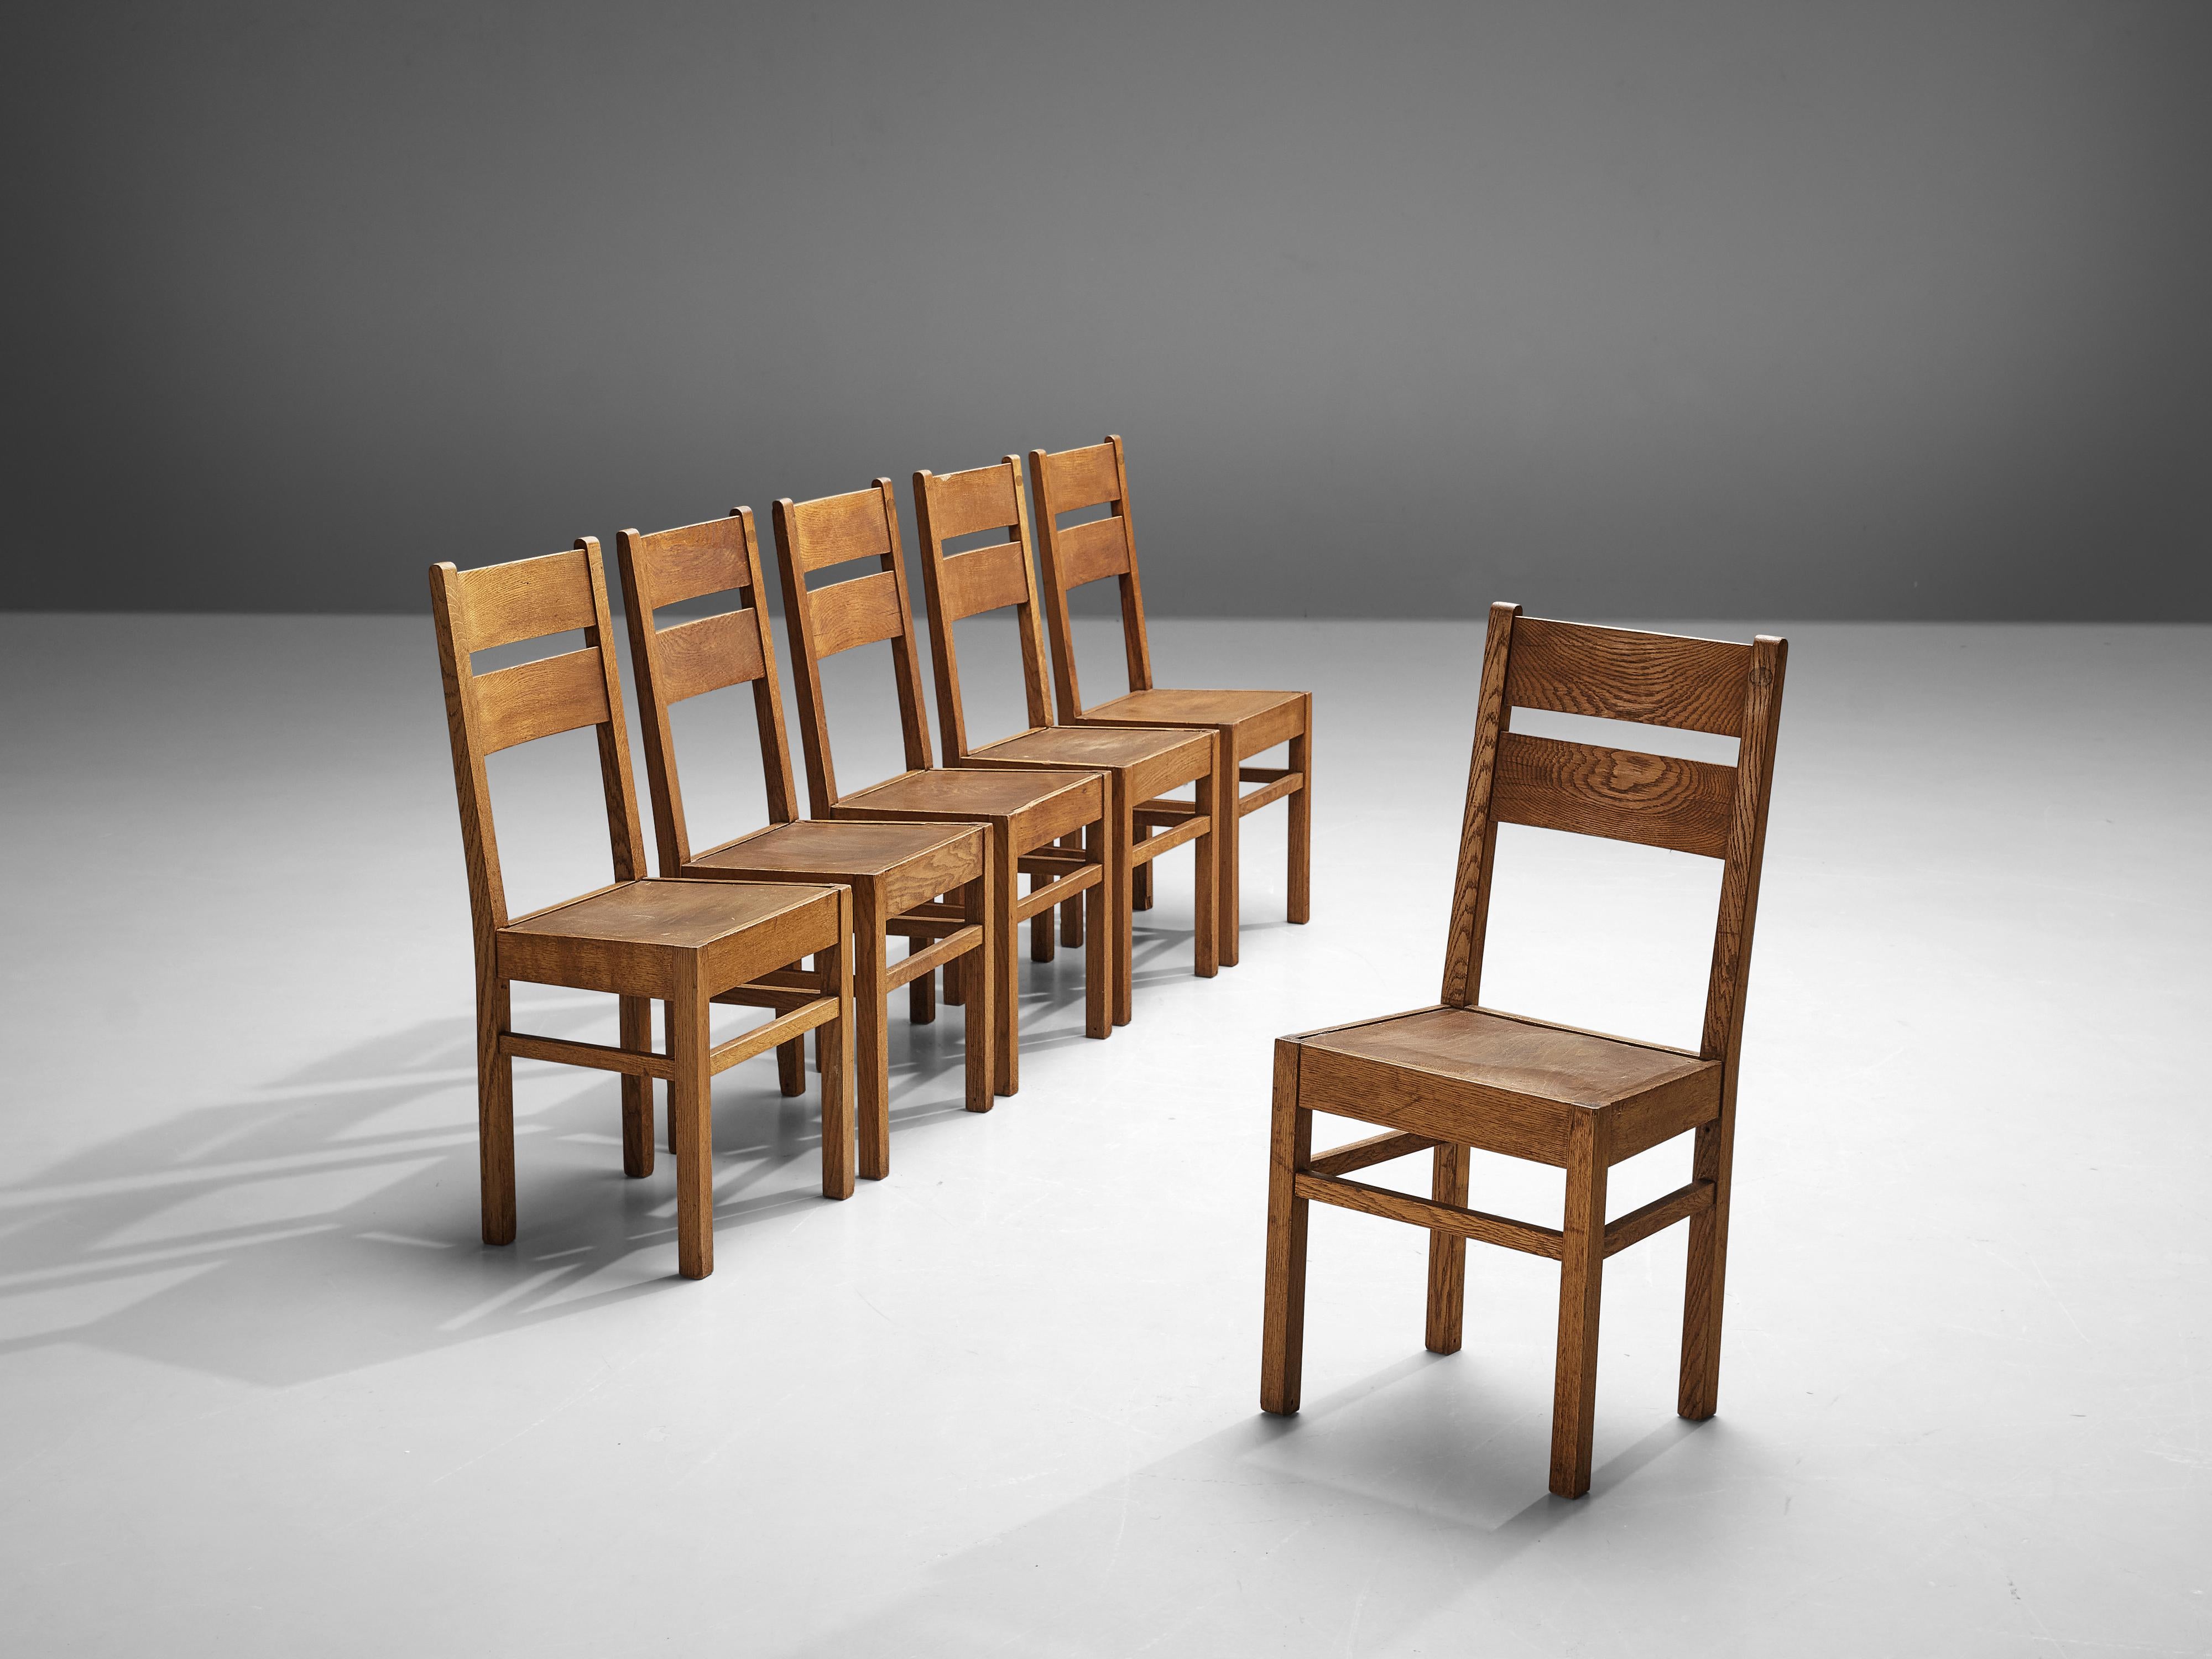 Chaises de salle à manger, chêne, Pays-Bas, années 1940

Ces chaises de salle à manger présentent non seulement un dossier et un cadre général bien équilibrés. Le cadre est très structuré et robuste, ce qui est également visible au niveau des pieds.